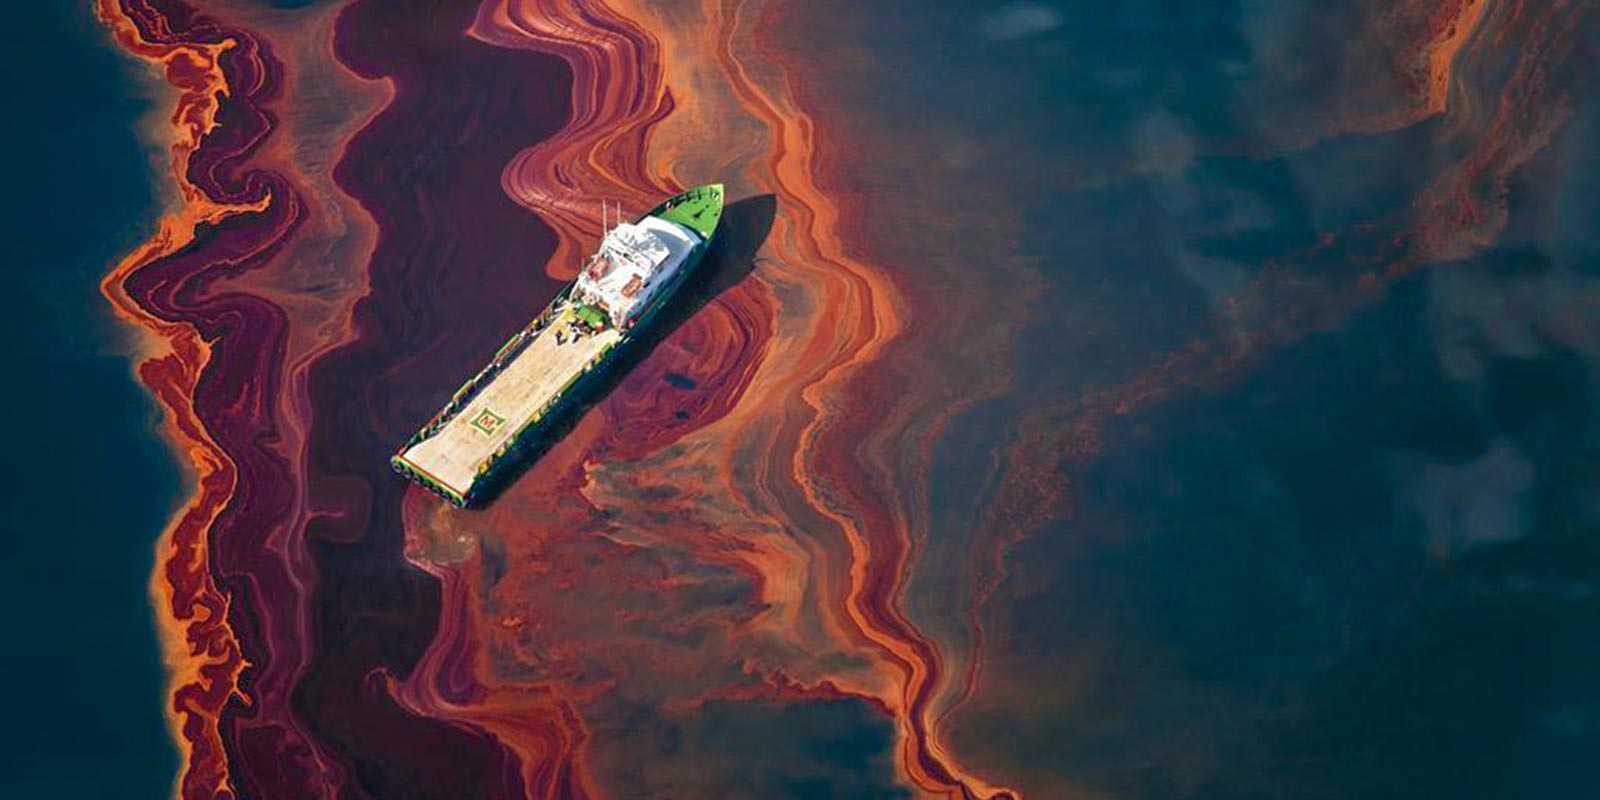 انگشت نگاری مواد نفتی در خلیج فارس برای تشخیص منشاء آلودگی